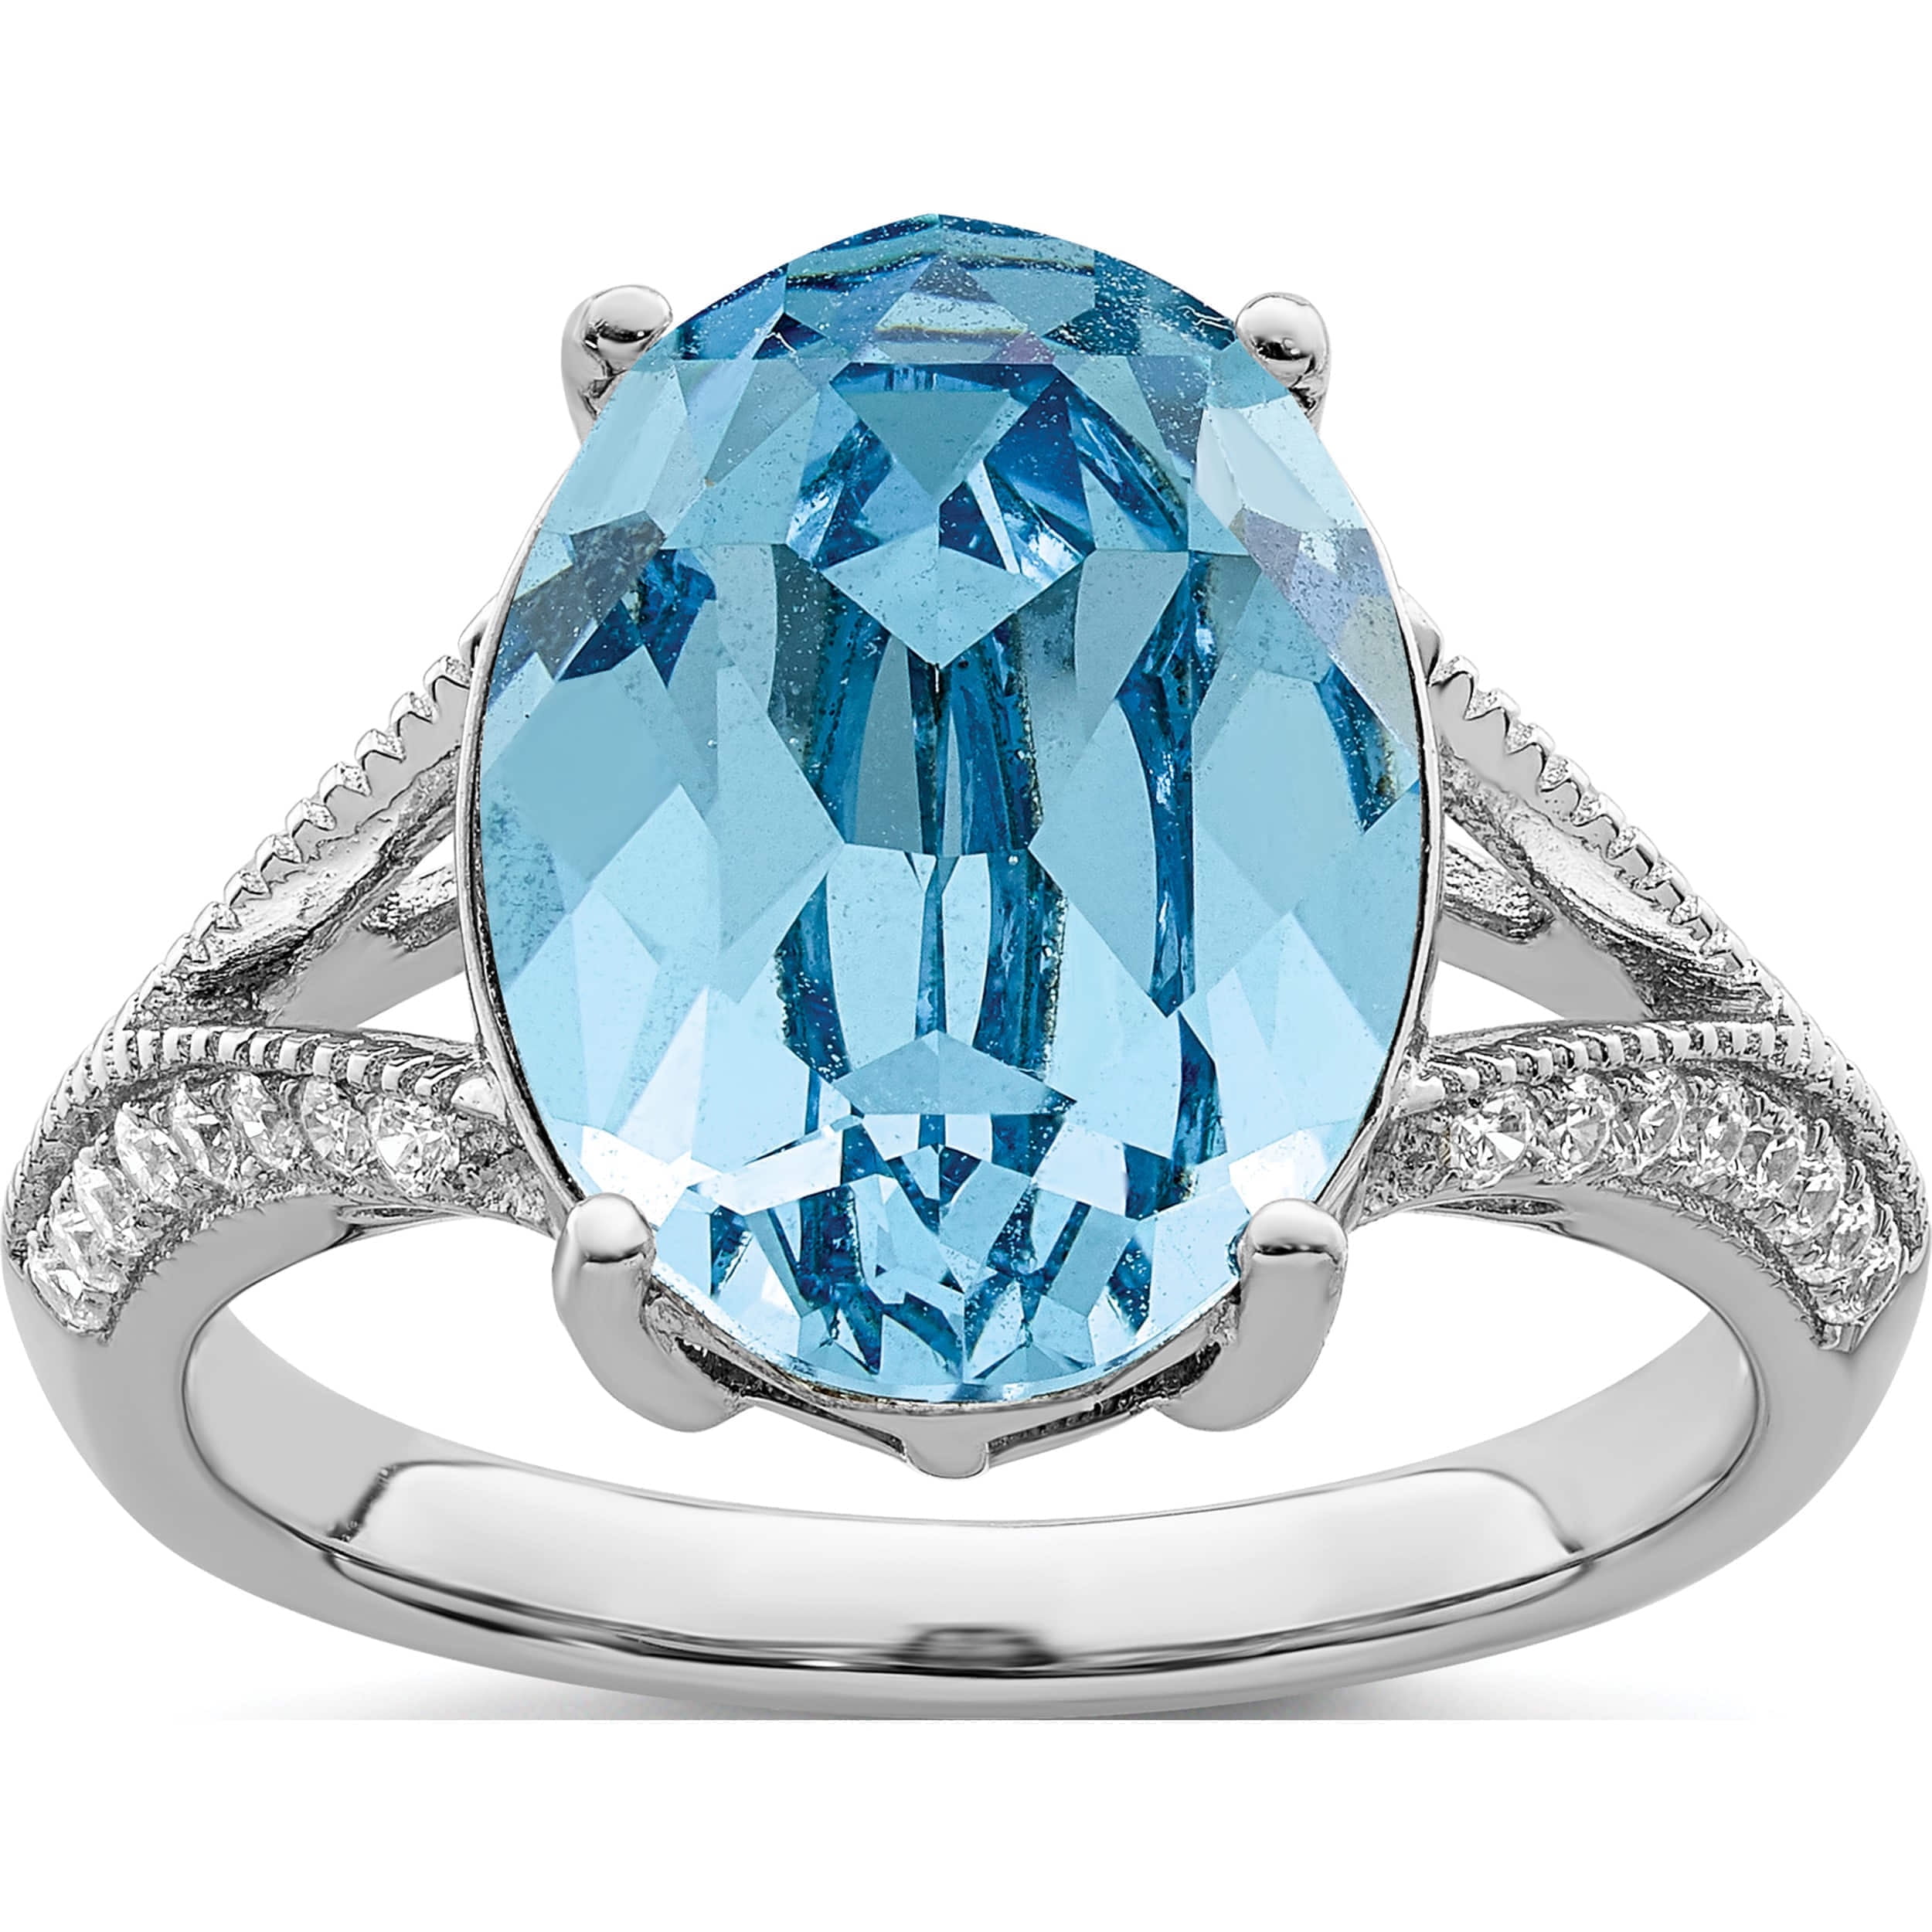 SWAROVSKI Crystal Twist Wrap Ring - Size 6 : Clothing, Shoes & Jewelry -  Amazon.com